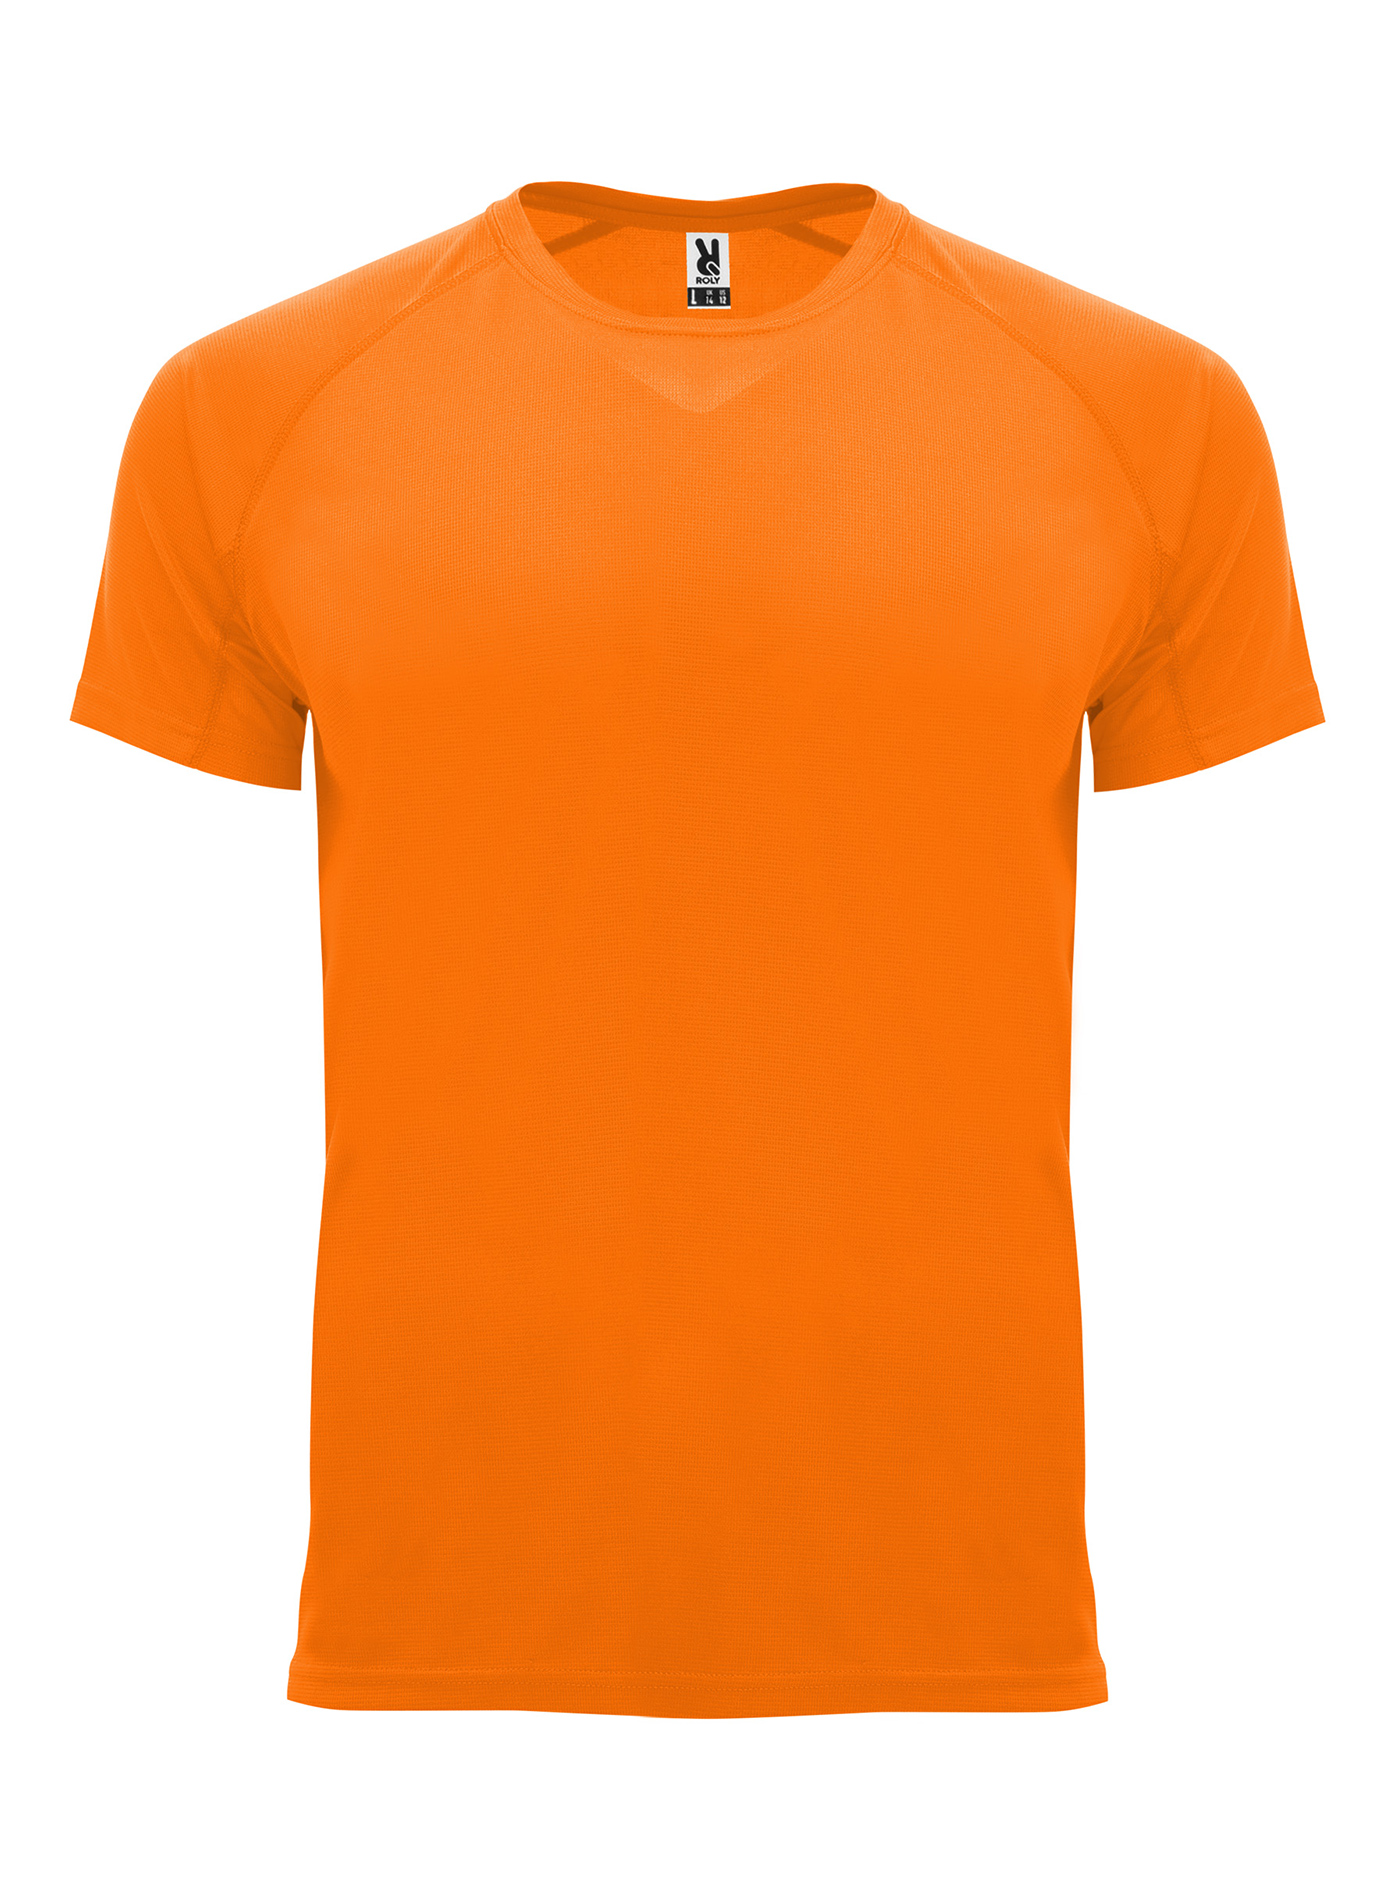 Pánské sportovní tričko Roly Bahrain - Neonová oranžová S